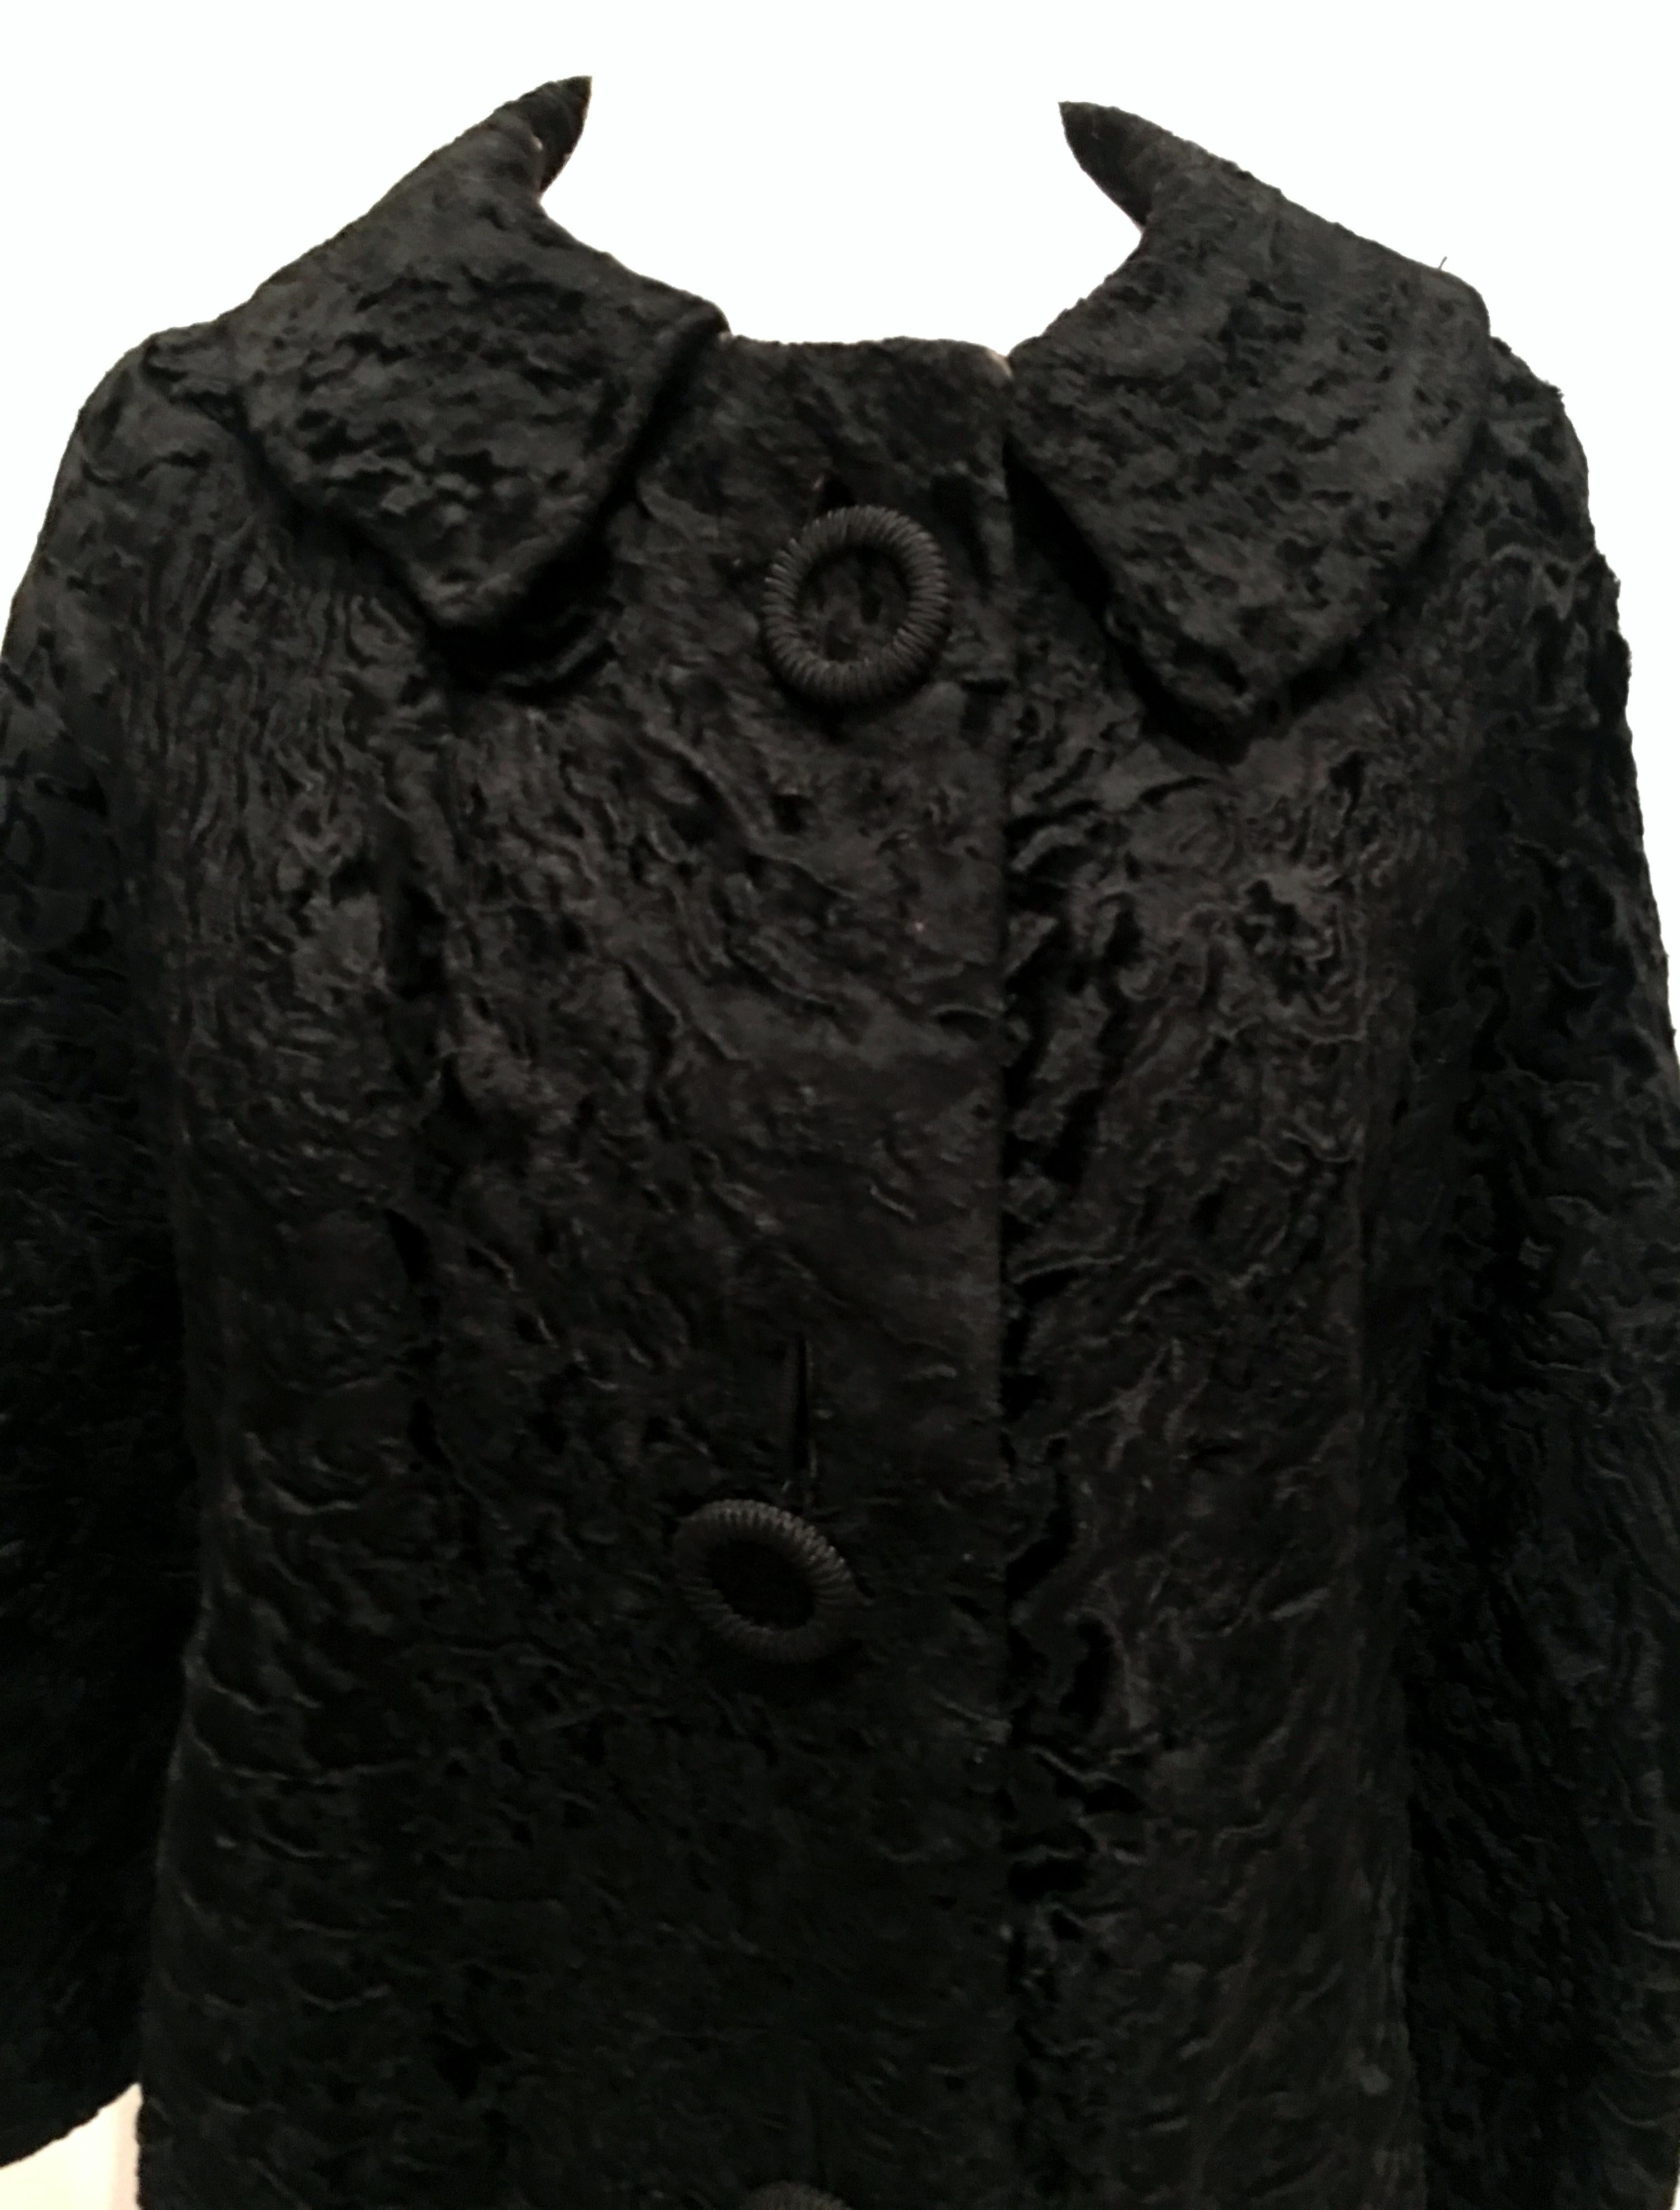 20th Century Sculptural Persian Jet Black Lamb Fur Swing Car Coat For Sale 1